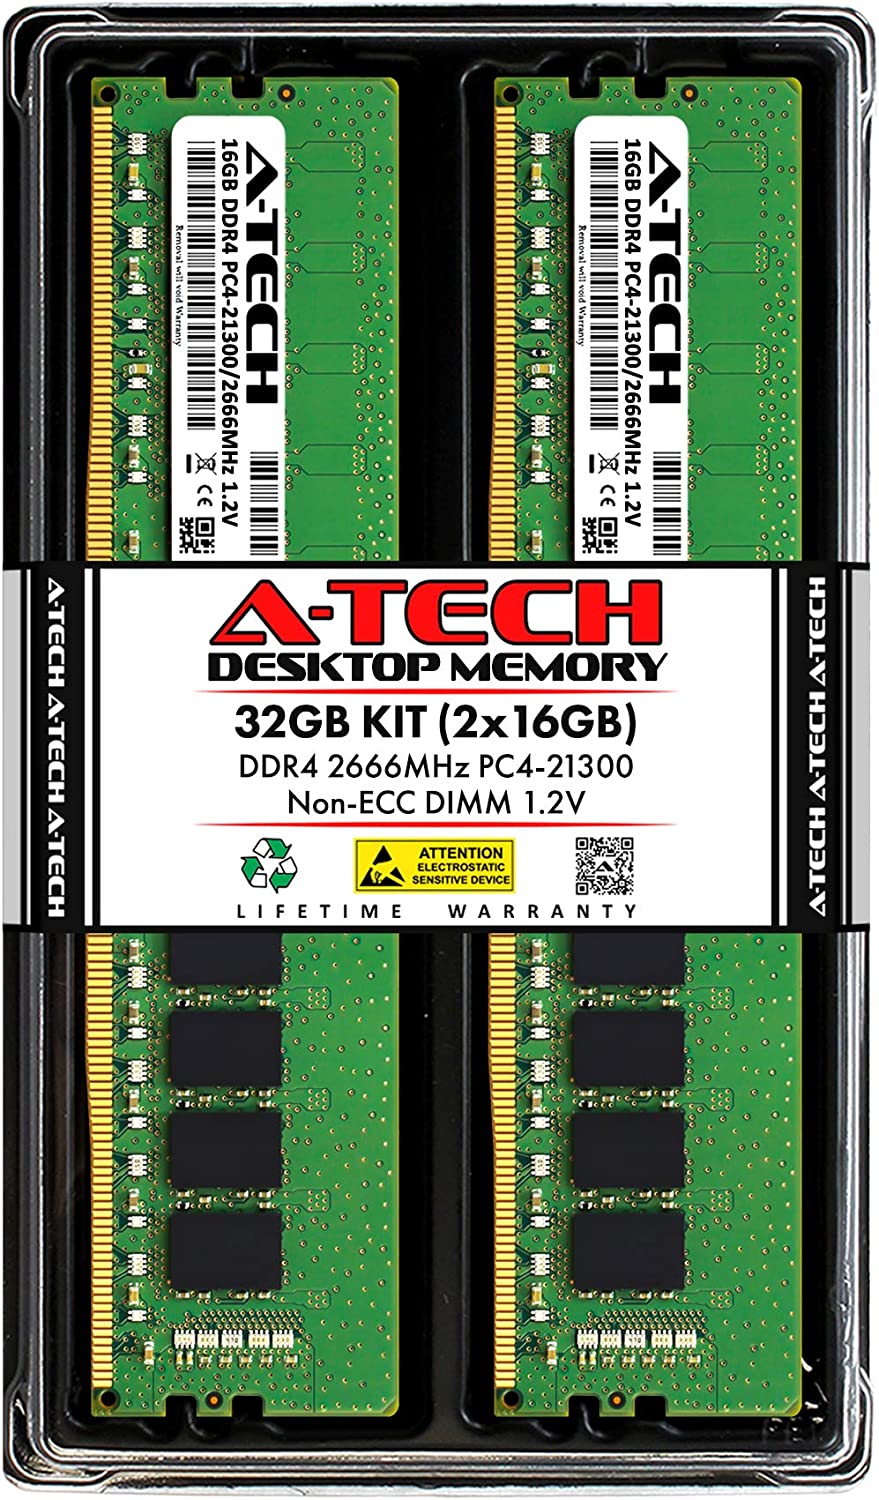 A-Tech Premium Memory 32GB Kit 2x16GB